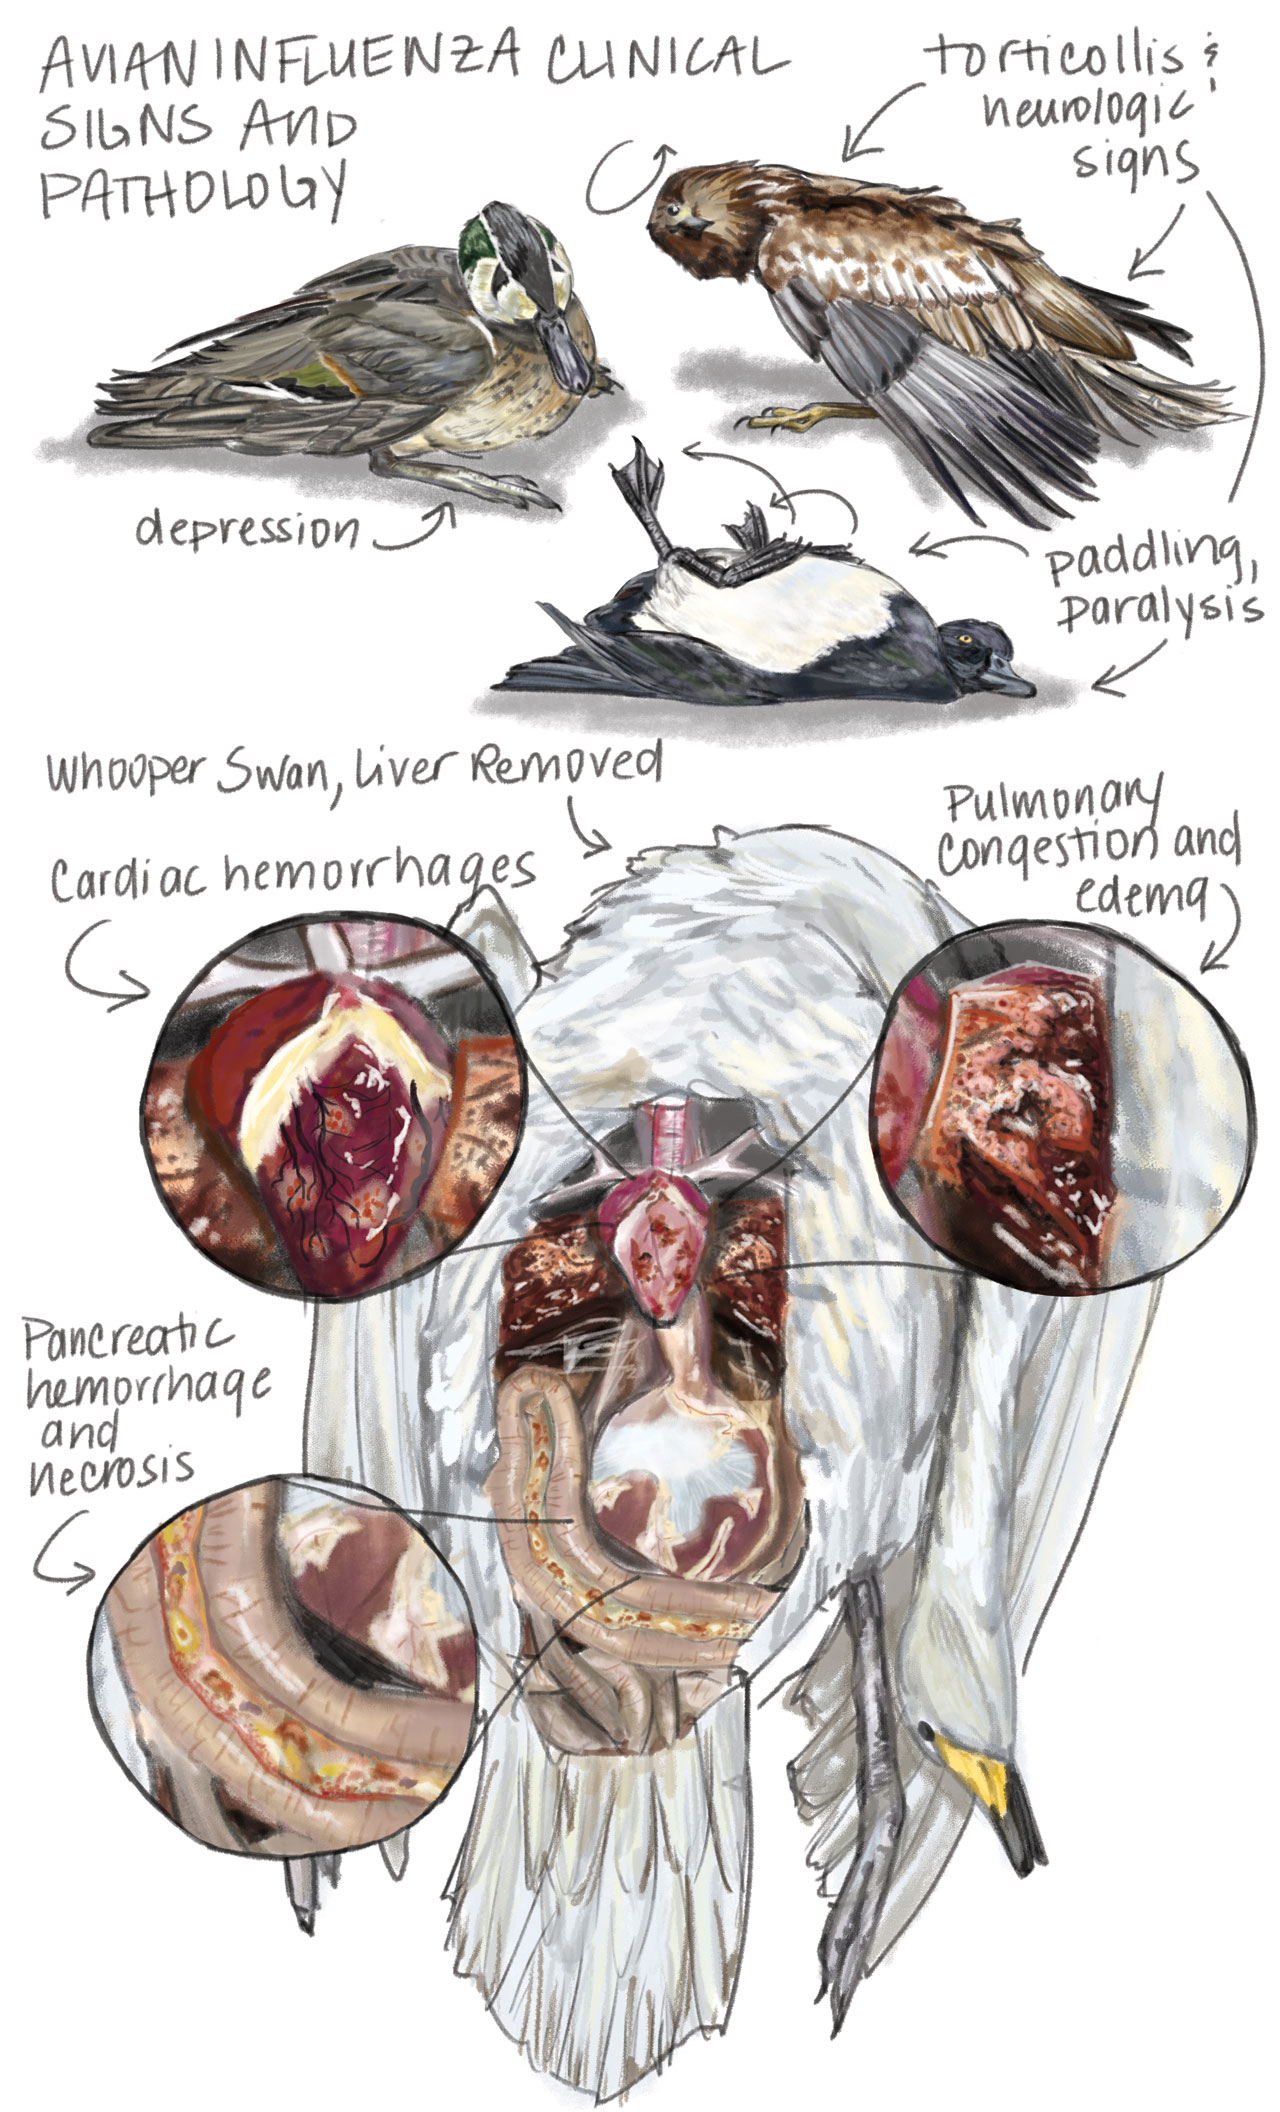 Illustrated pathology of avian influenza